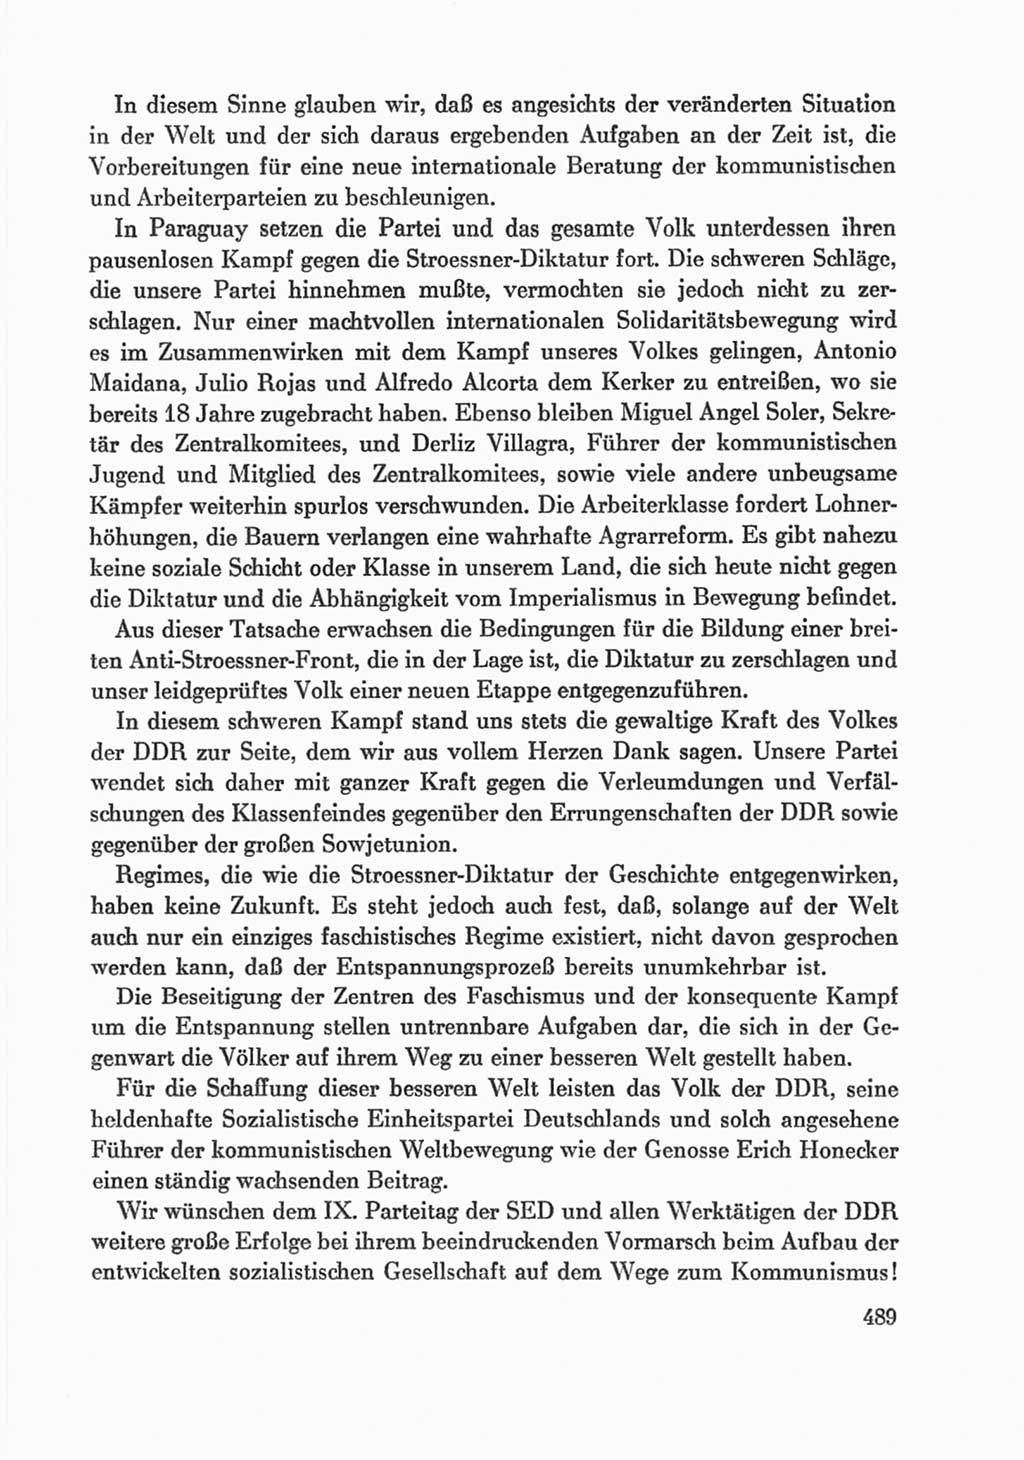 Protokoll der Verhandlungen des Ⅸ. Parteitages der Sozialistischen Einheitspartei Deutschlands (SED) [Deutsche Demokratische Republik (DDR)] 1976, Band 1, Seite 489 (Prot. Verh. Ⅸ. PT SED DDR 1976, Bd. 1, S. 489)